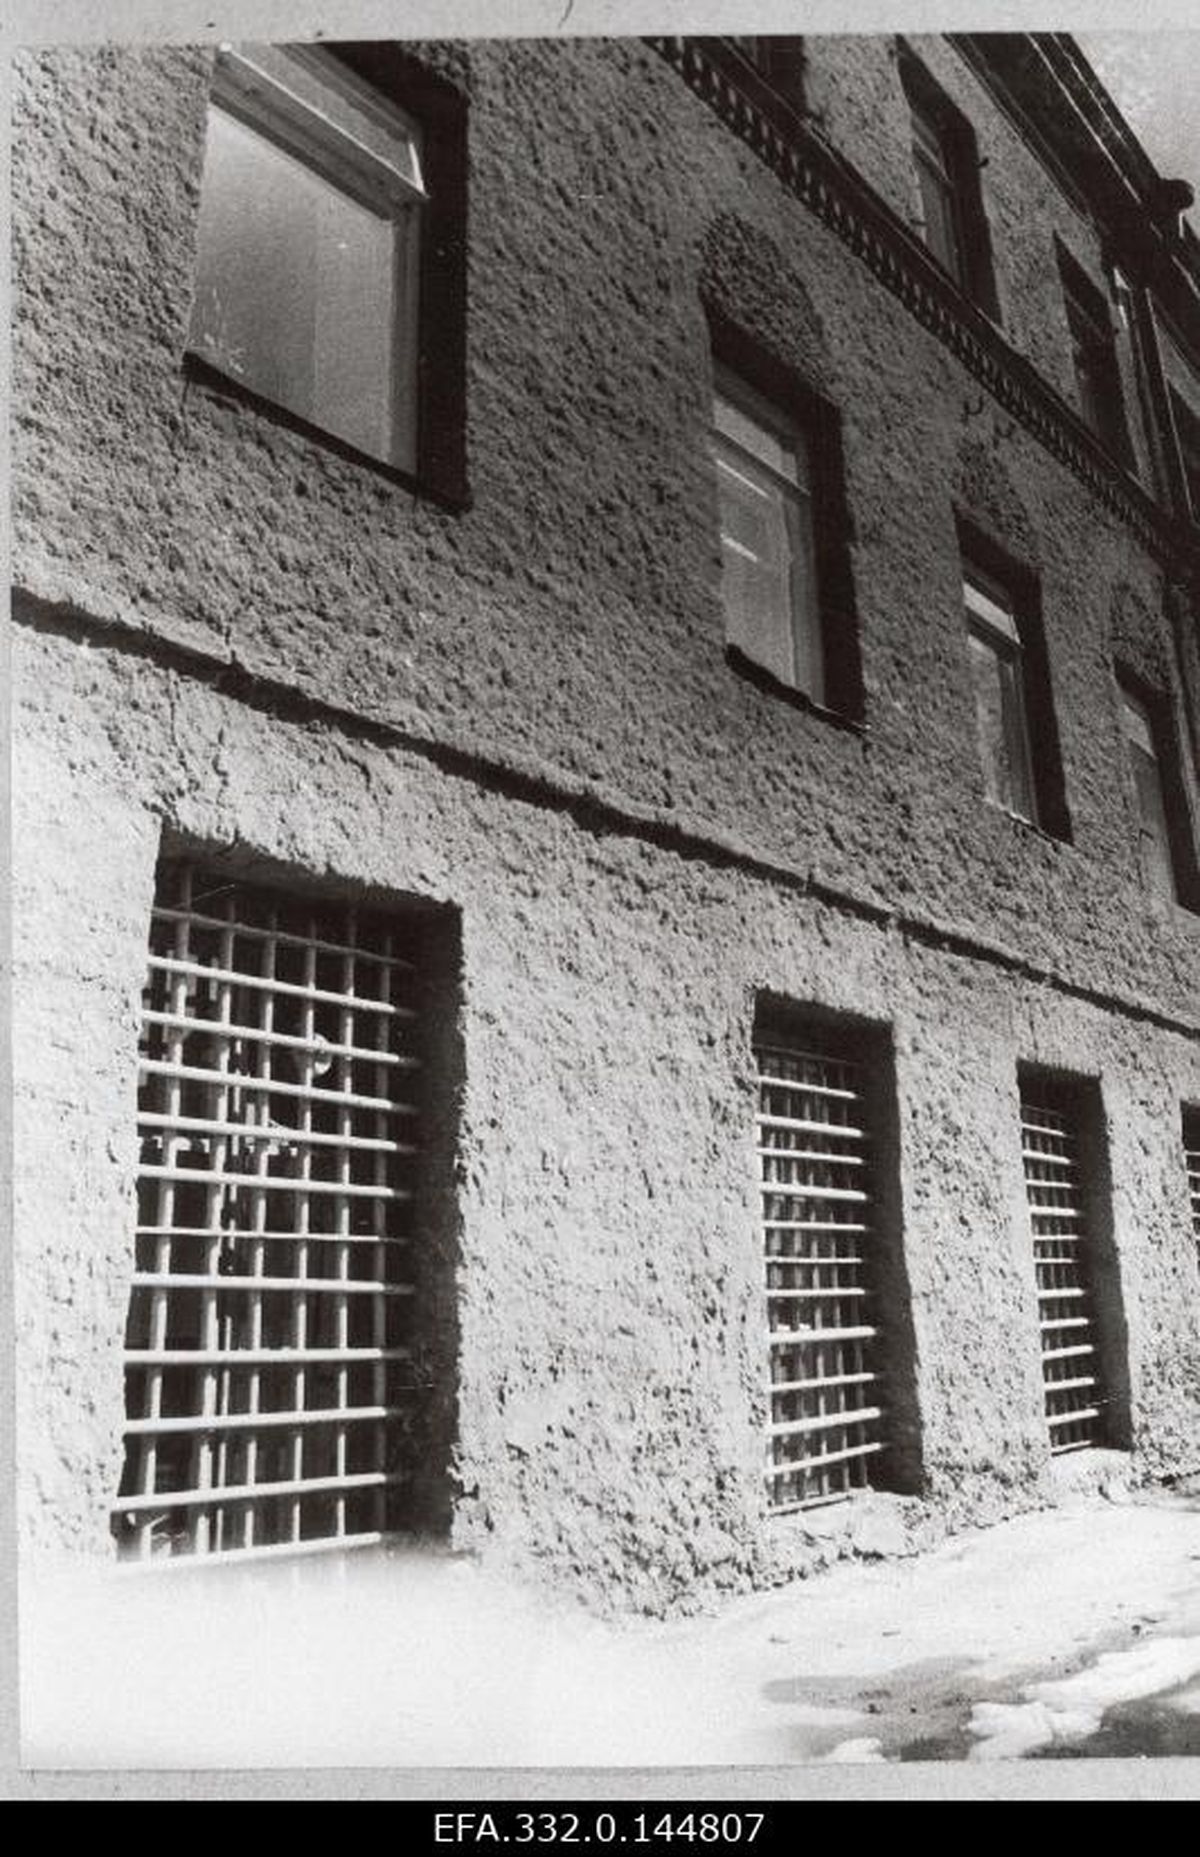 Rakvere õmblusvabriku Virulane välisvaade aastal 1988. Kuni 1945. aastani asus seal vangimaja, millest Elmar Sarv korduvalt jalga lasi.